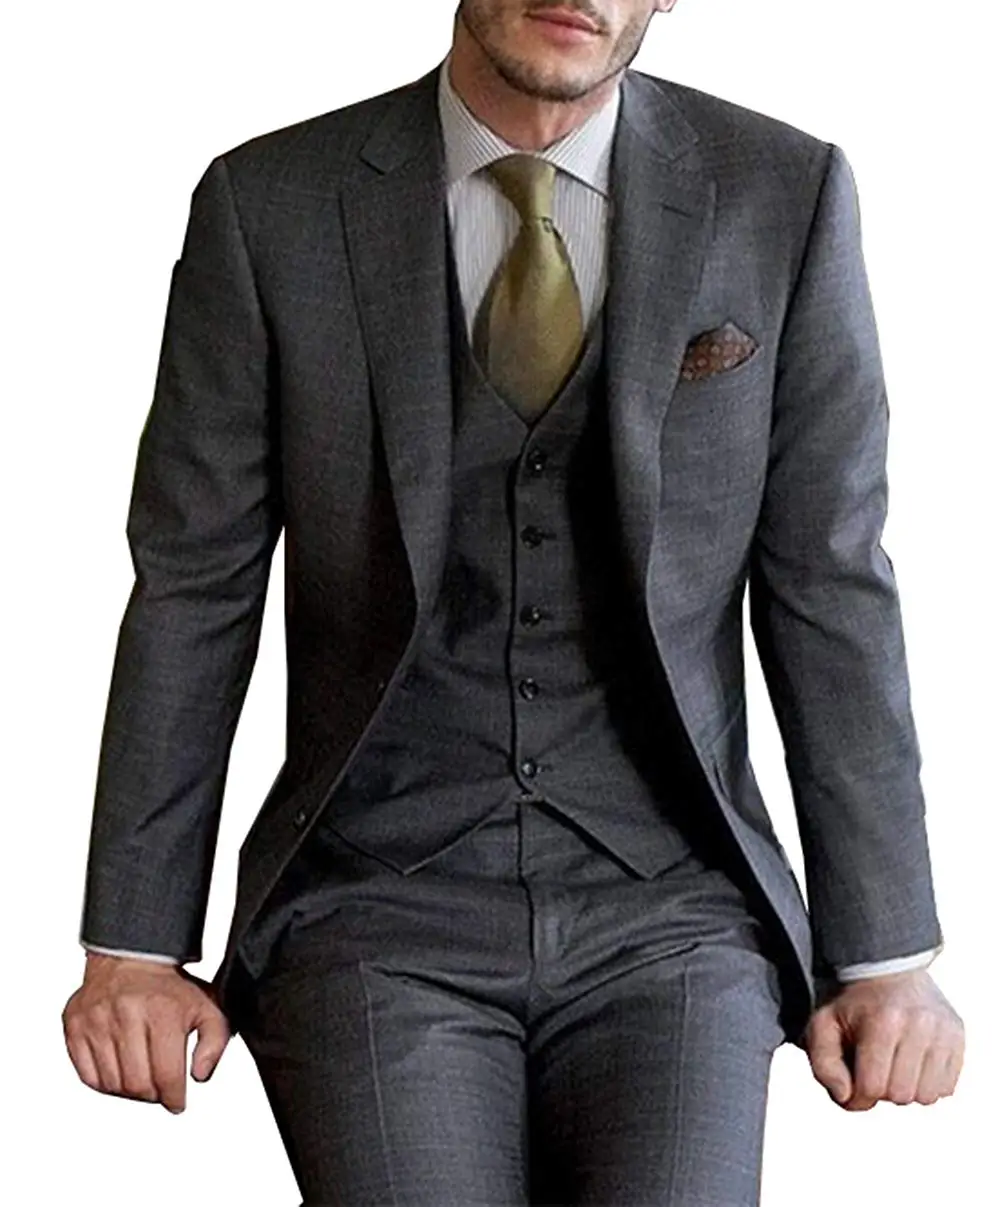 Yüksek Kaliteli Koyu Gri erkek Takım Elbise Resmi 3 Parça takım elbise Setleri Şal Yaka İki Düğme Blazer Pantolon (ceket + pantolon + yelek) Görüntü 1